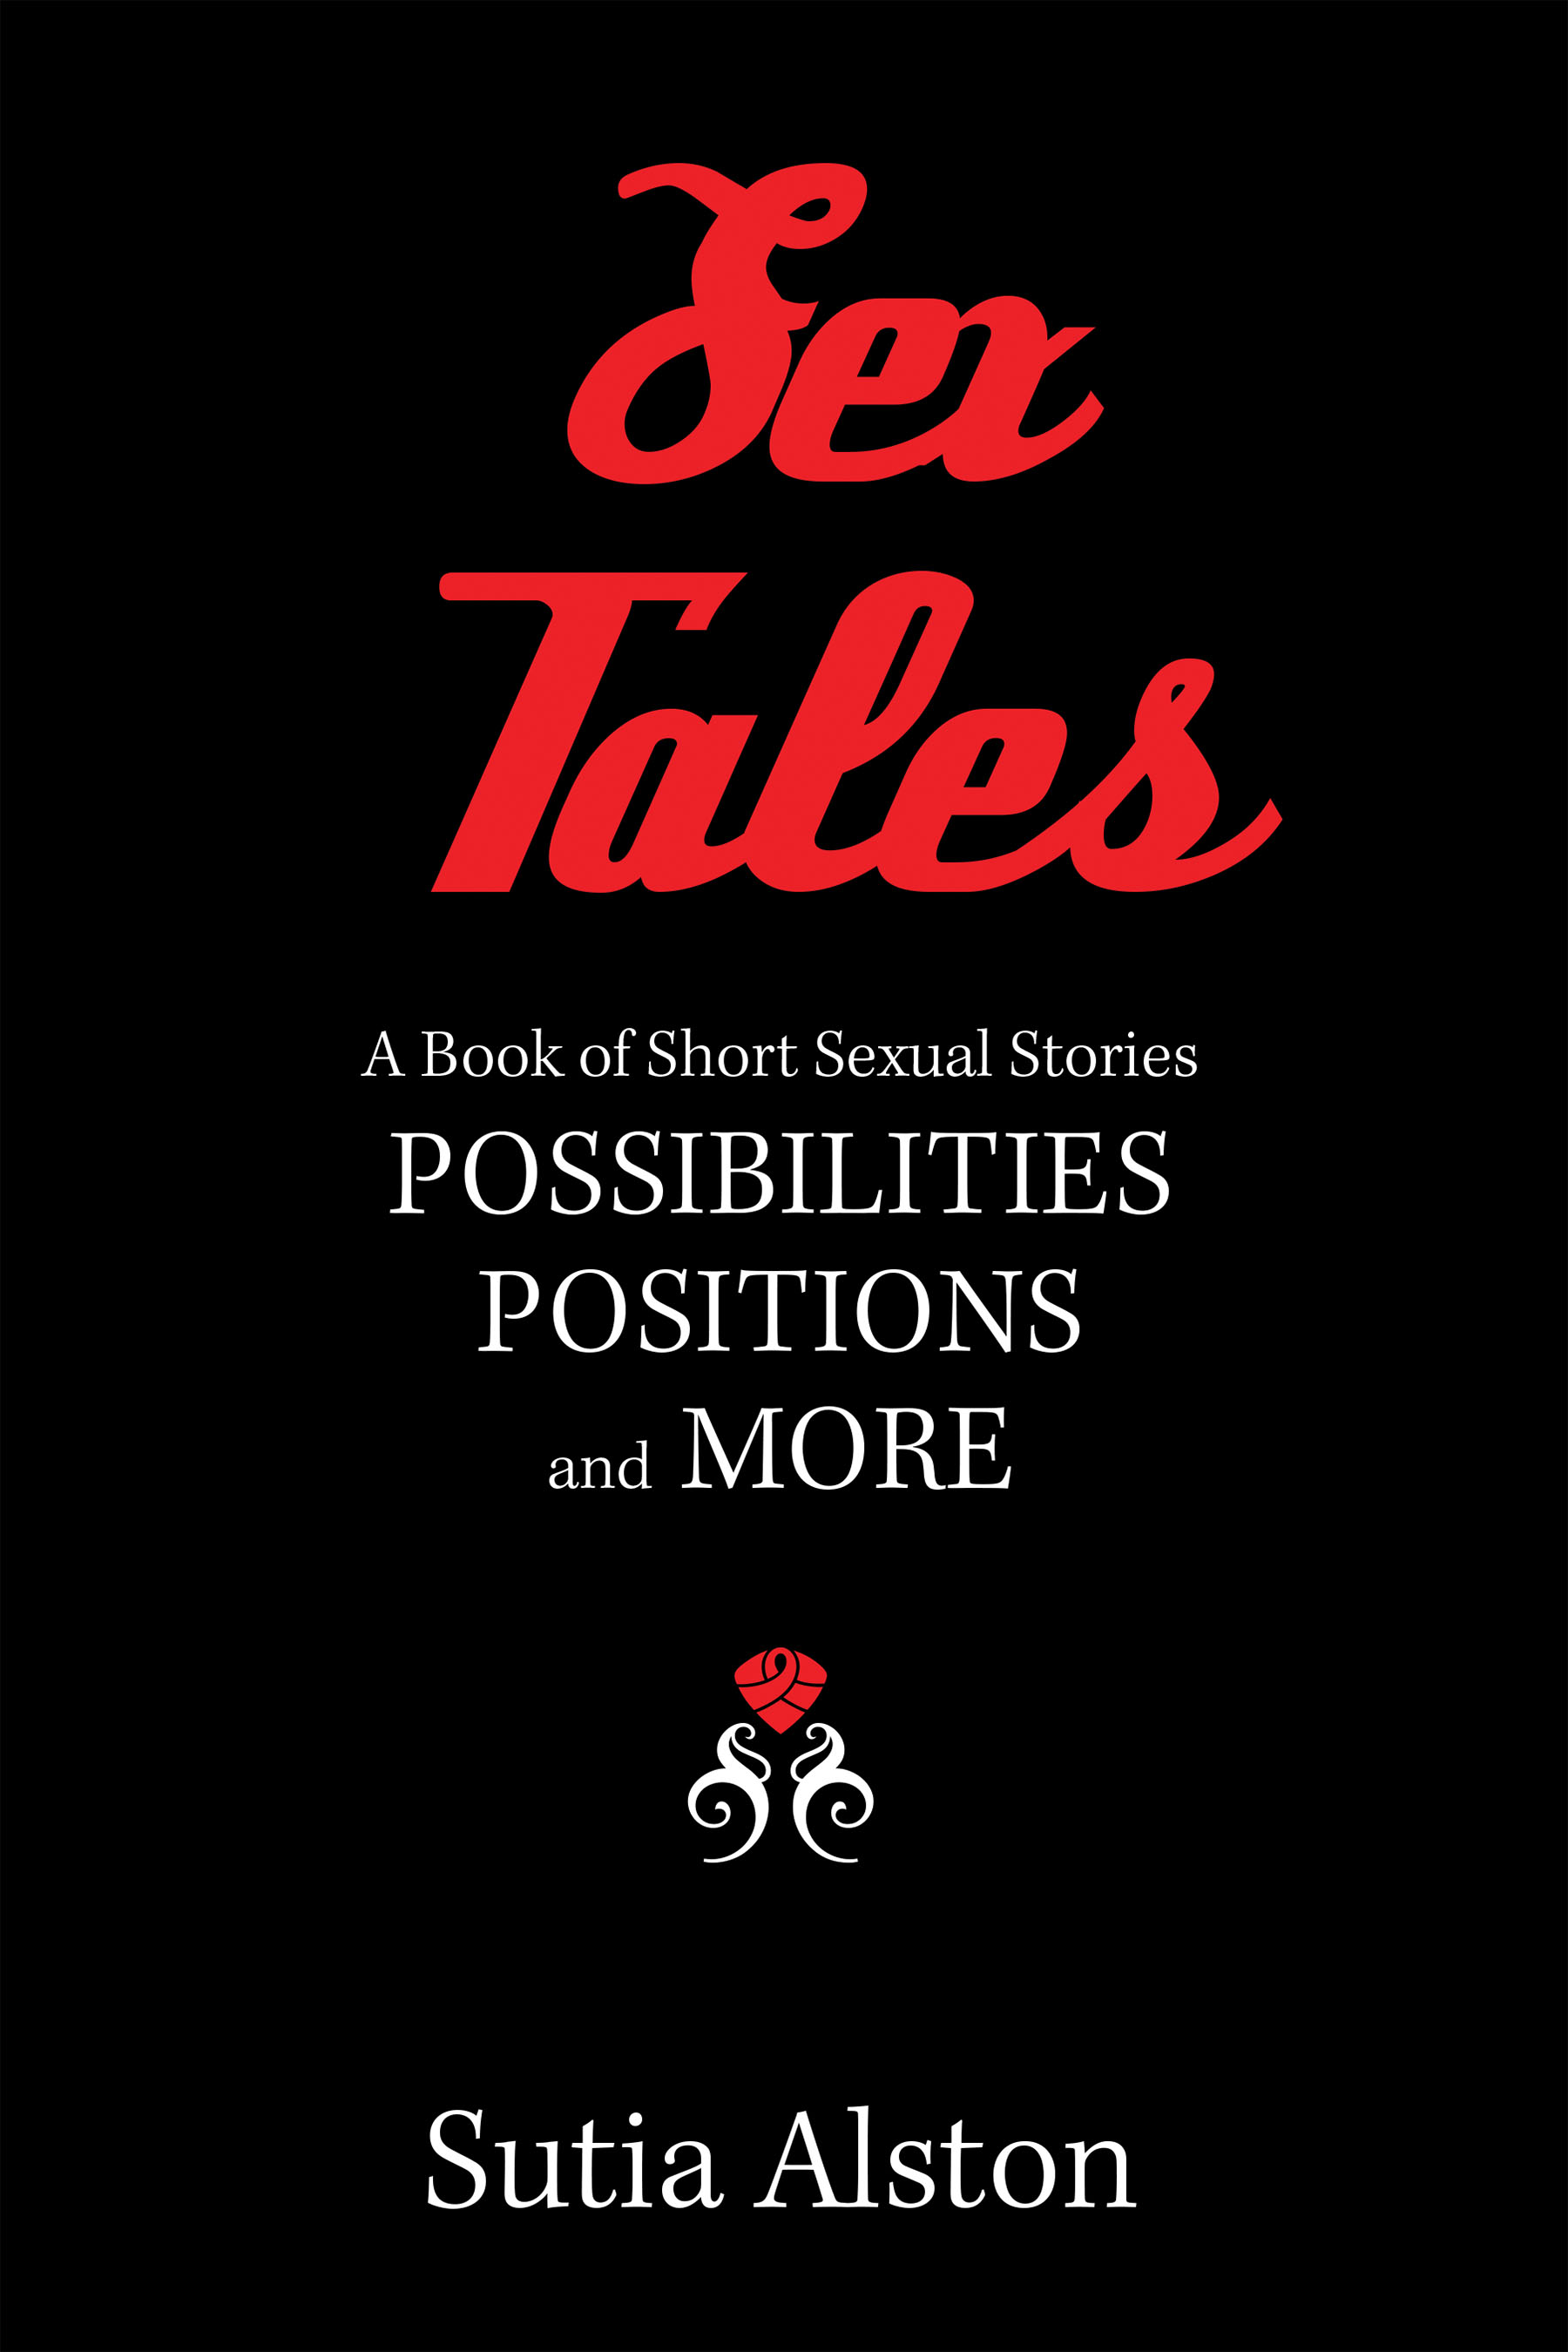 Sex Tales by Sutia Alston